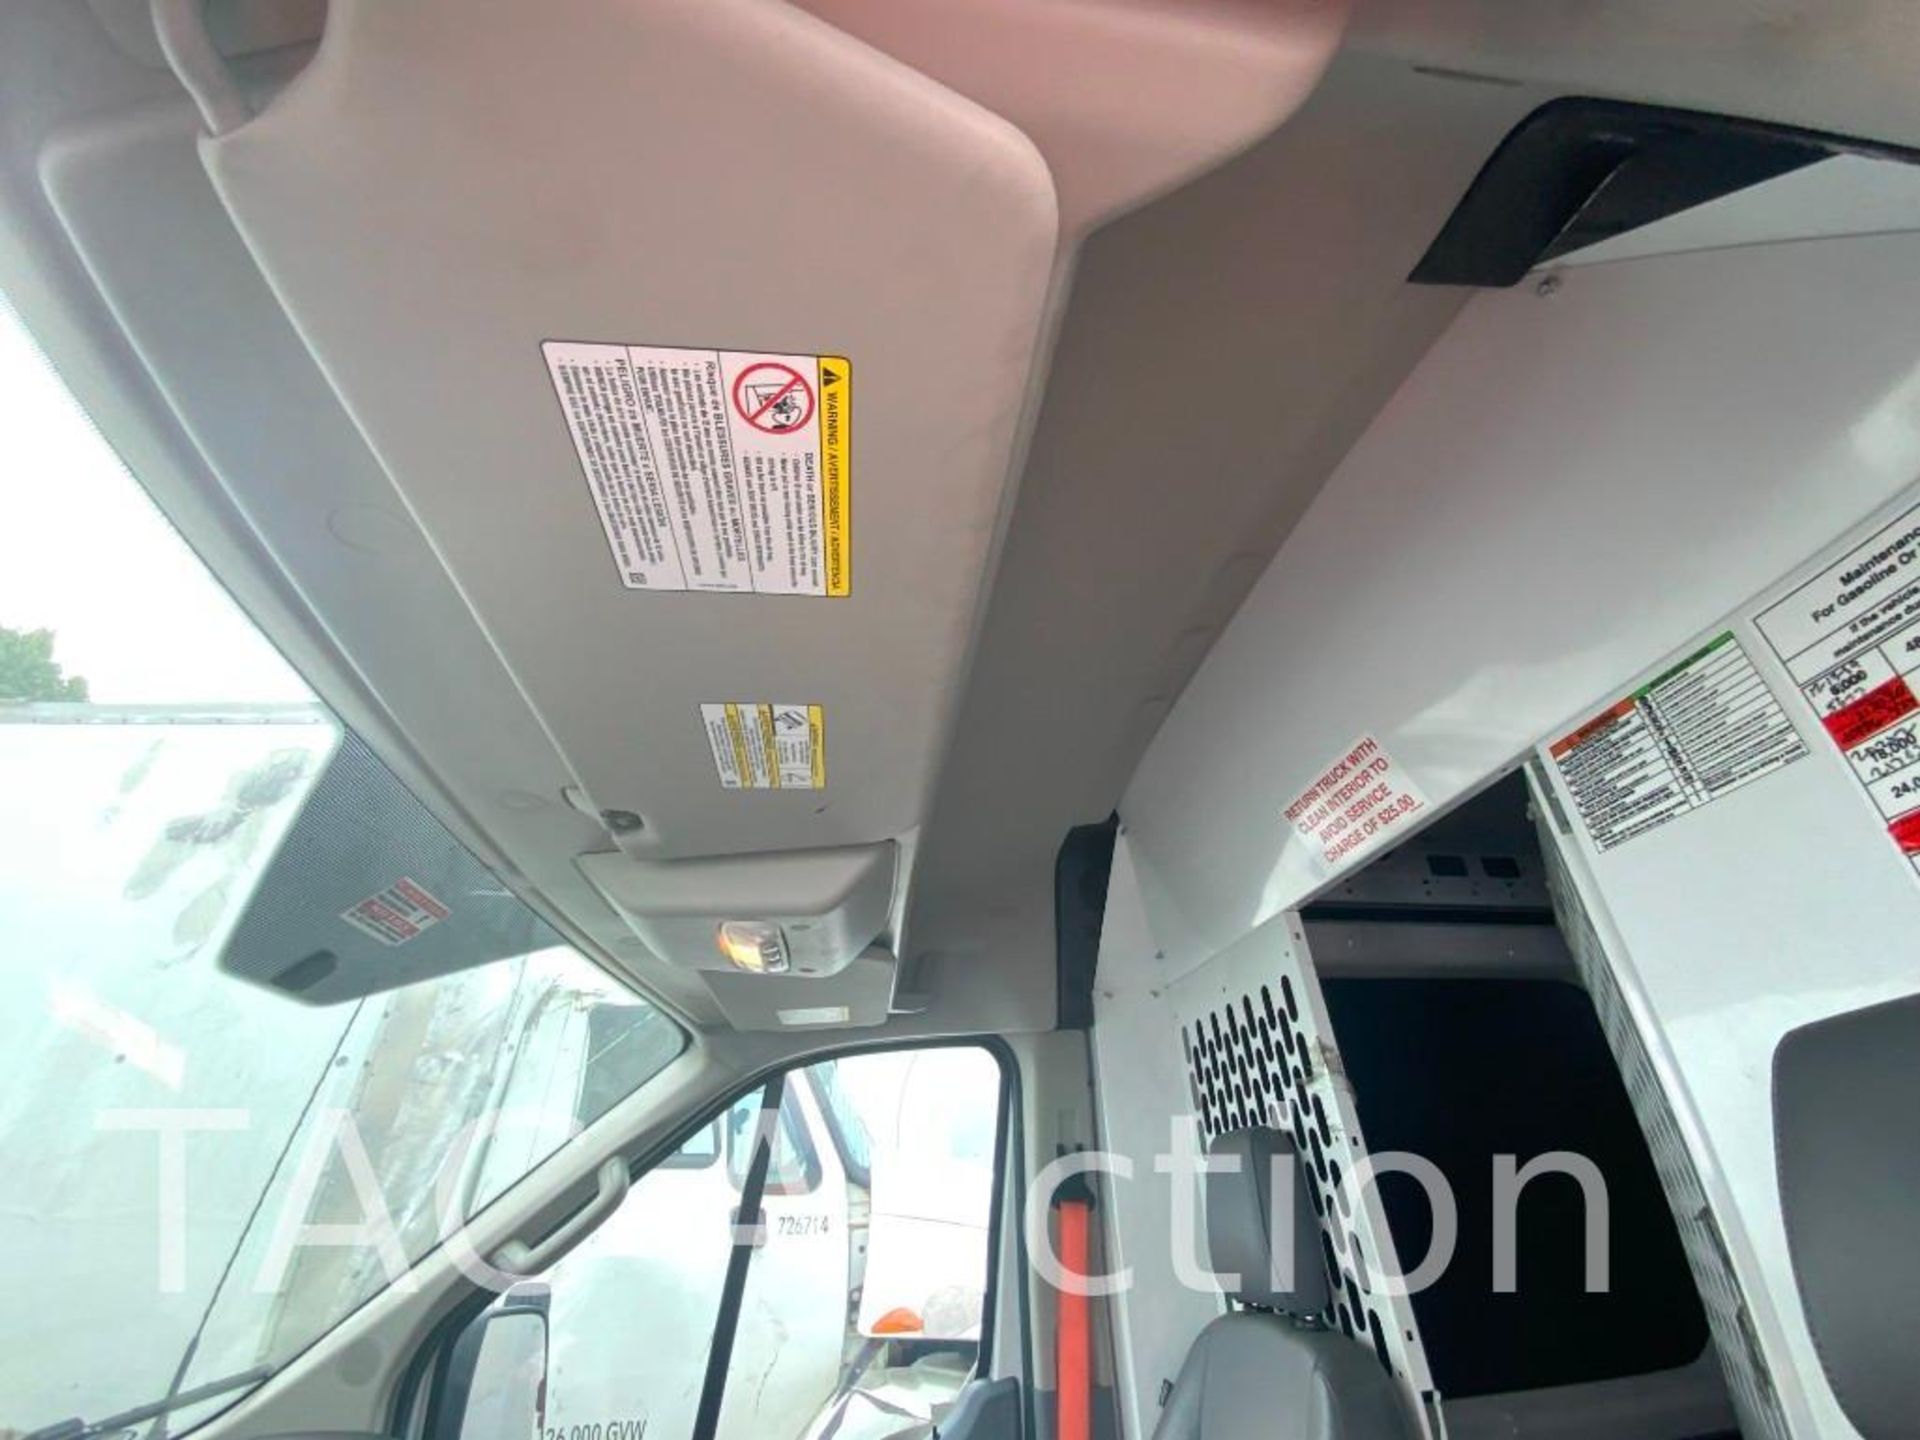 2019 Ford T150 Transit Van - Image 20 of 42